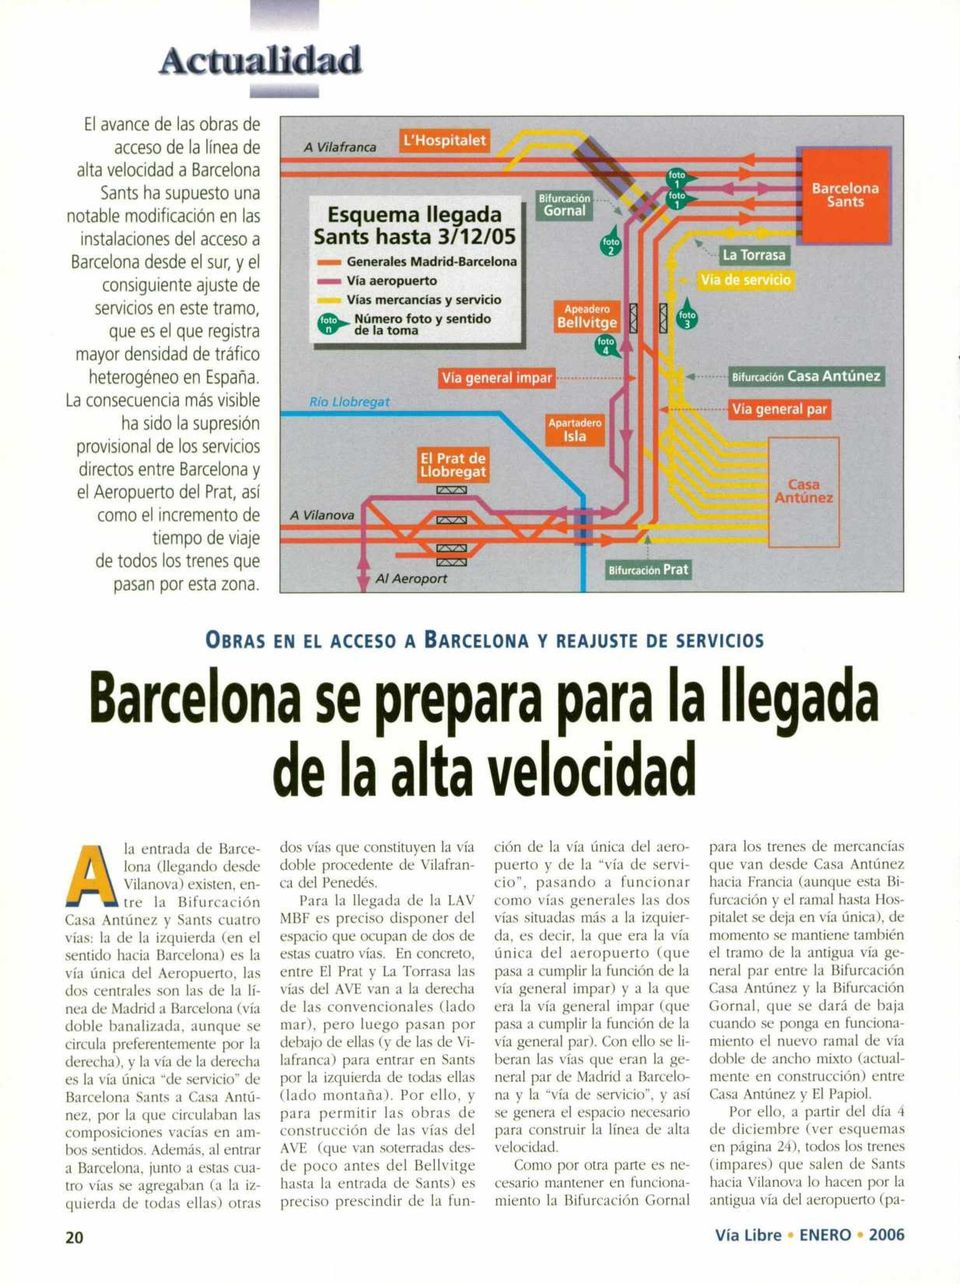 La consecuencia más visible ha sido la supresión provisional de los servicios directos entre Barcelona y el Aeropuerto del Prat, así como el incremento de tiempo de viaje de todos los trenes que